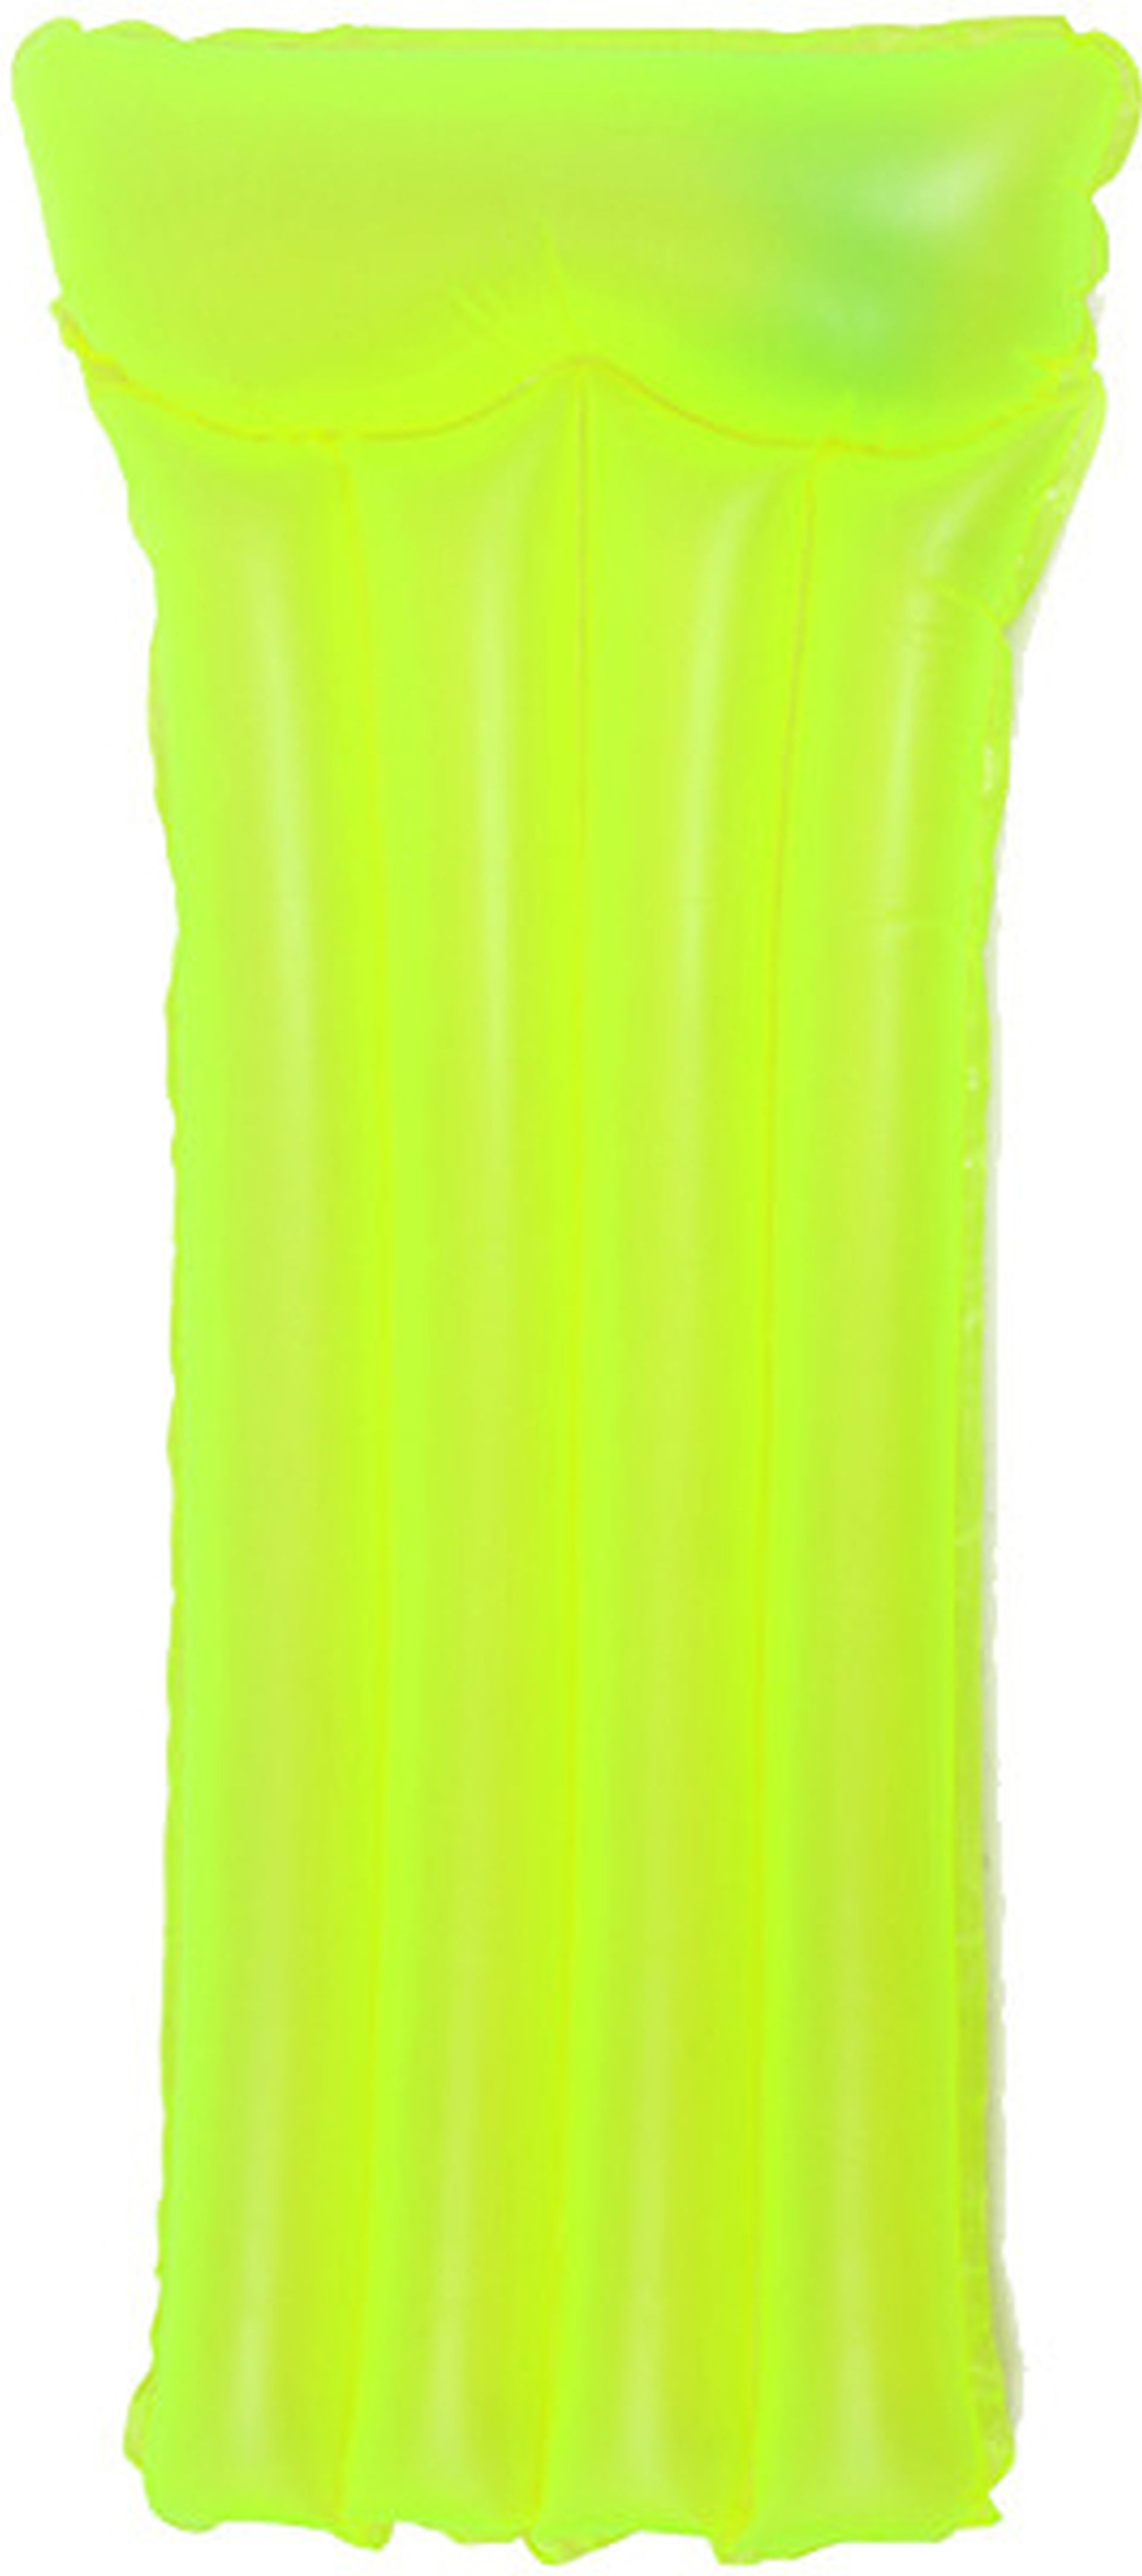 INTEX Neon frost air mats lehátko 183x76, žlutá 59717EU